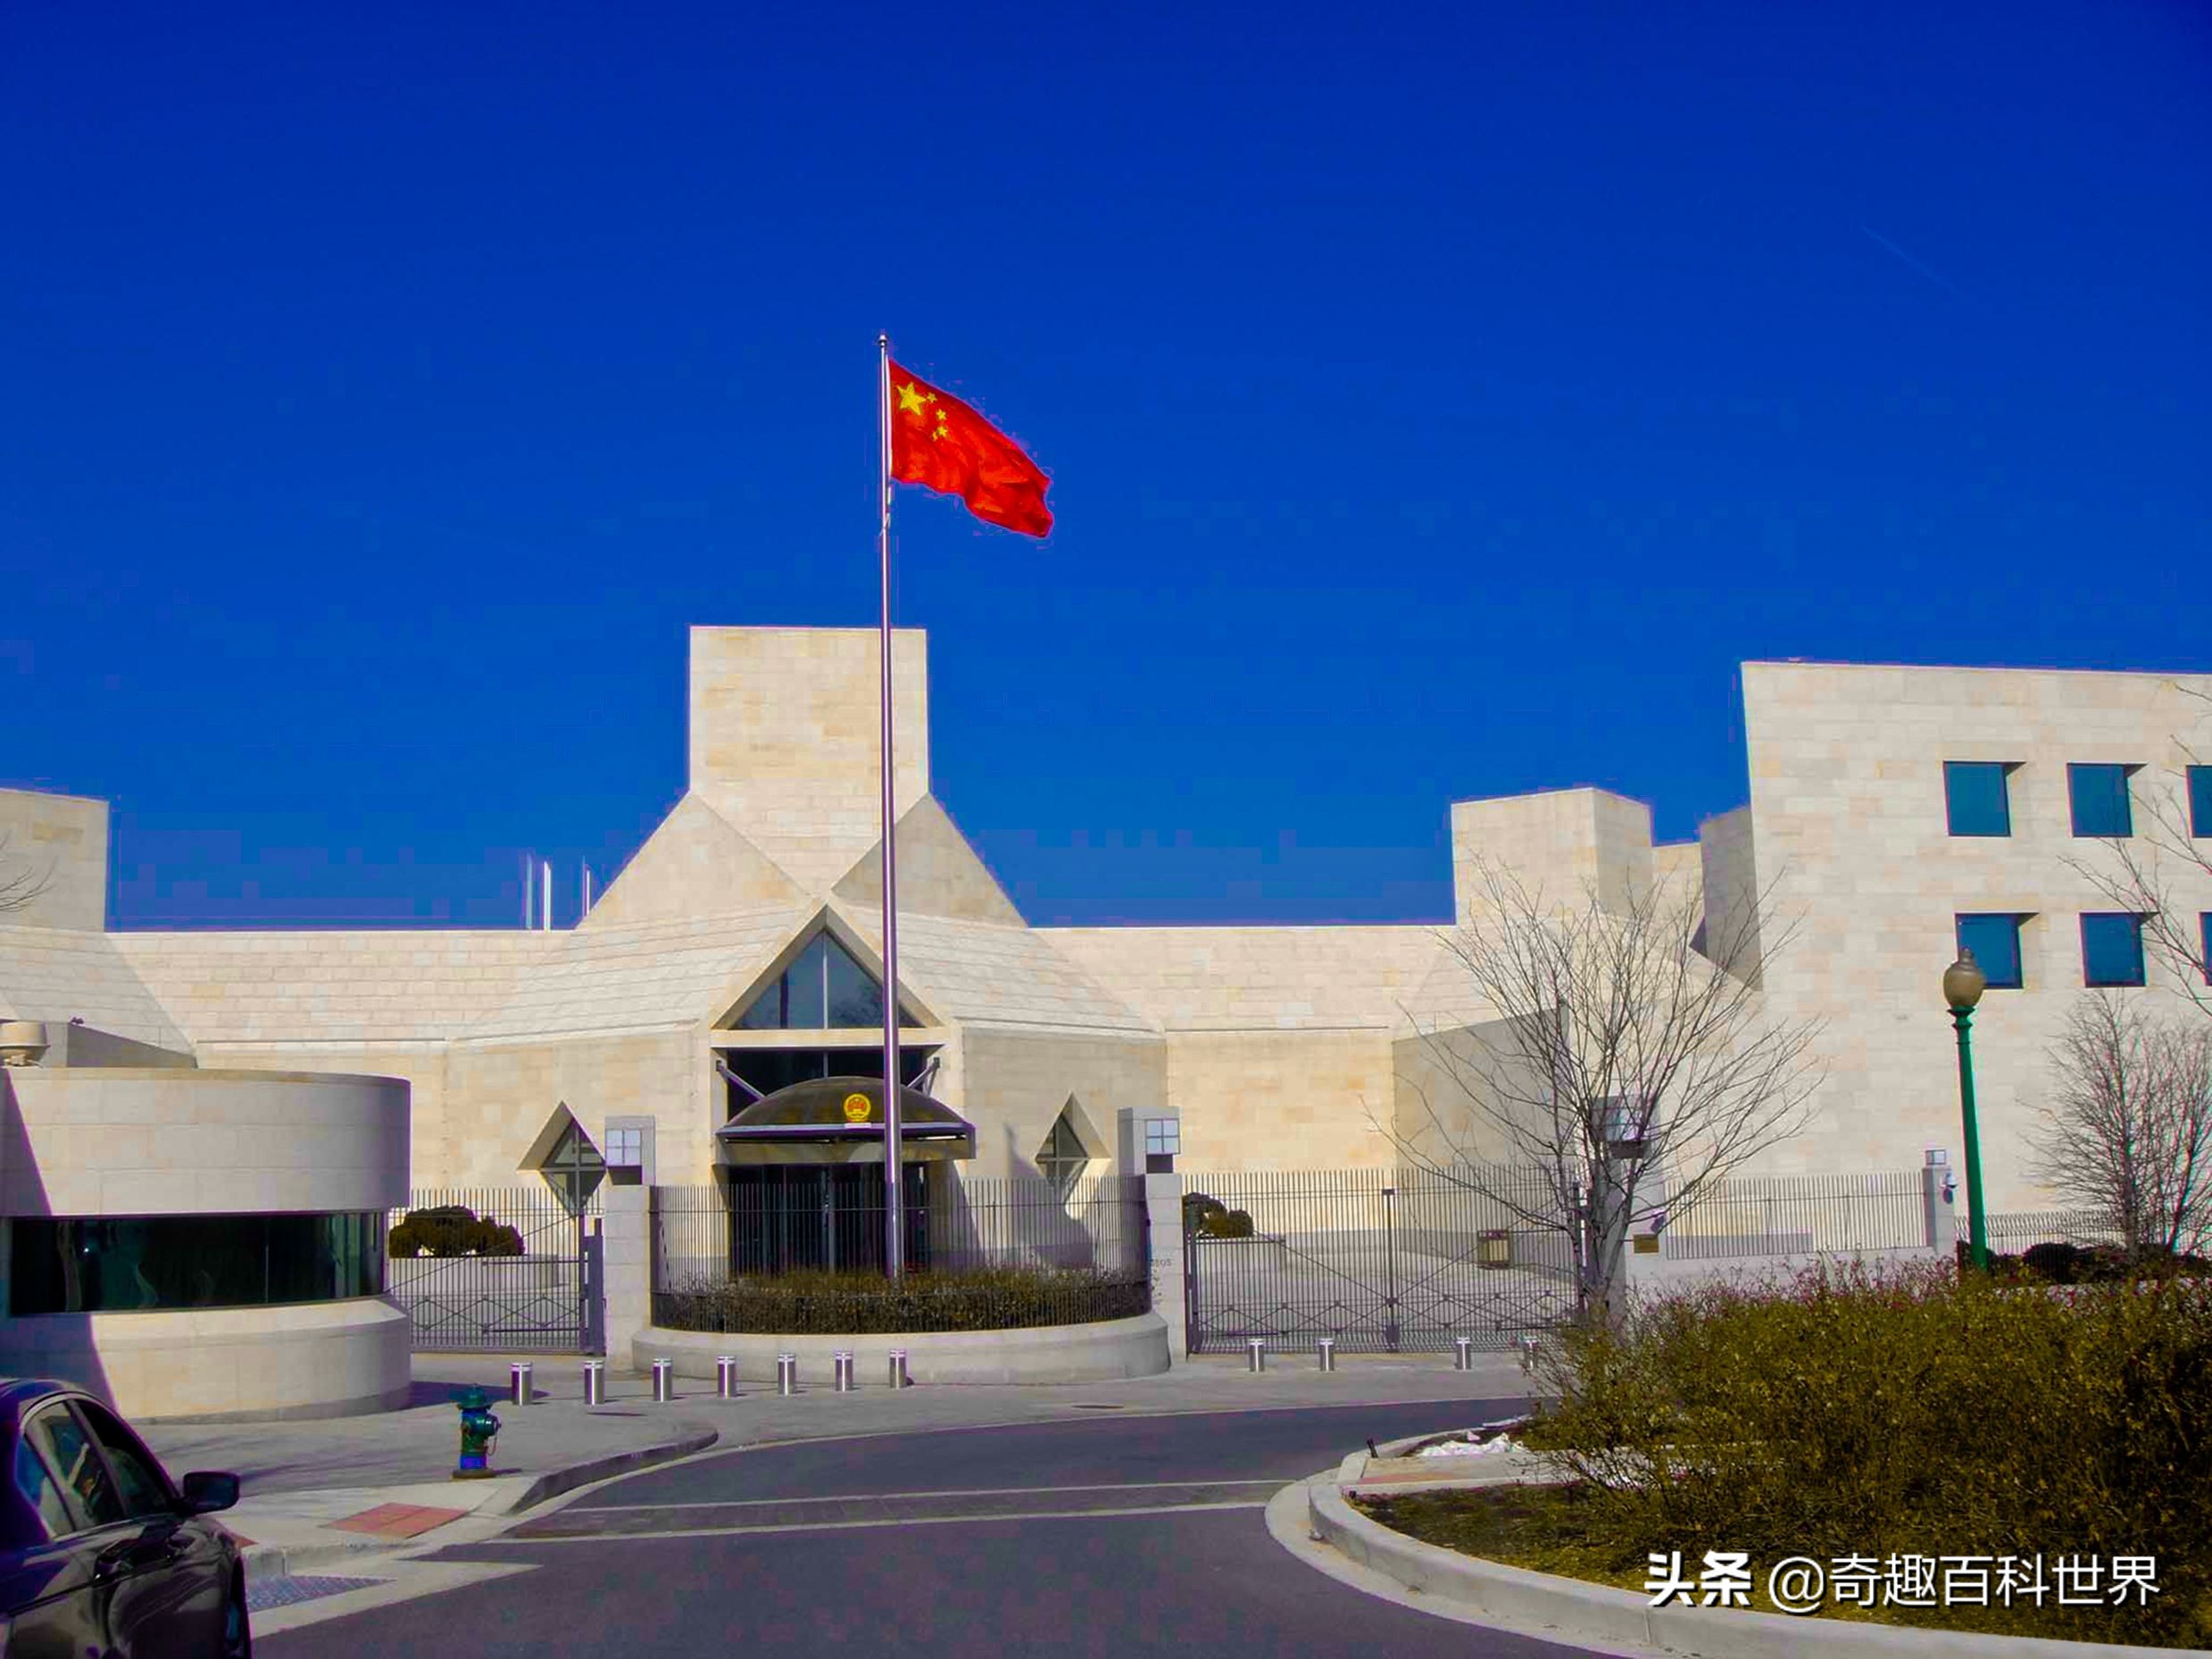 中国驻越南使馆办理越南首例海外远程视频公证